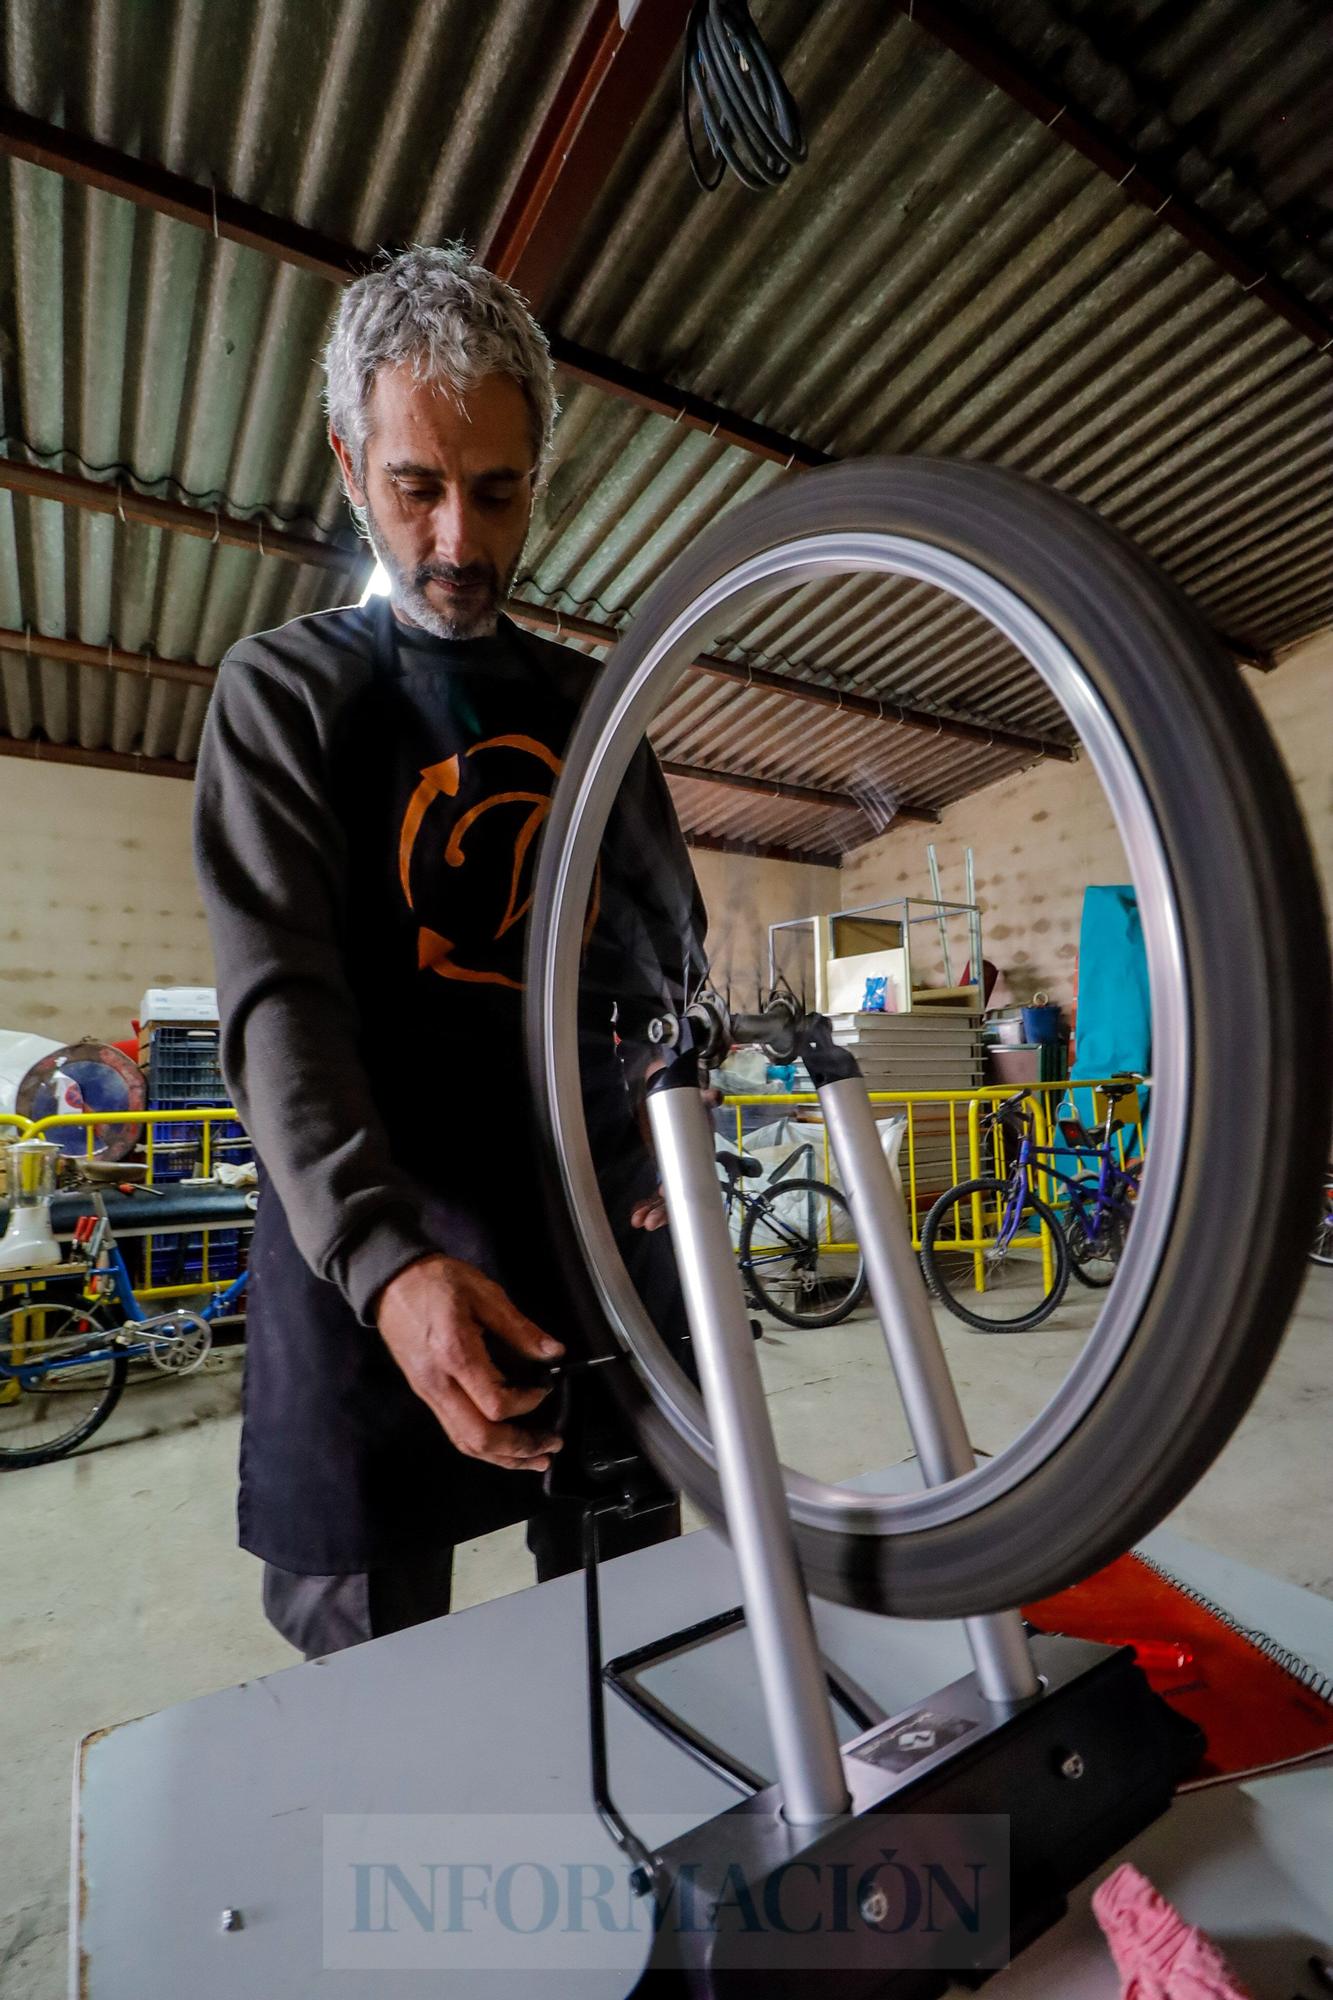 Bicicletas recicladas, un vehículo para la integración